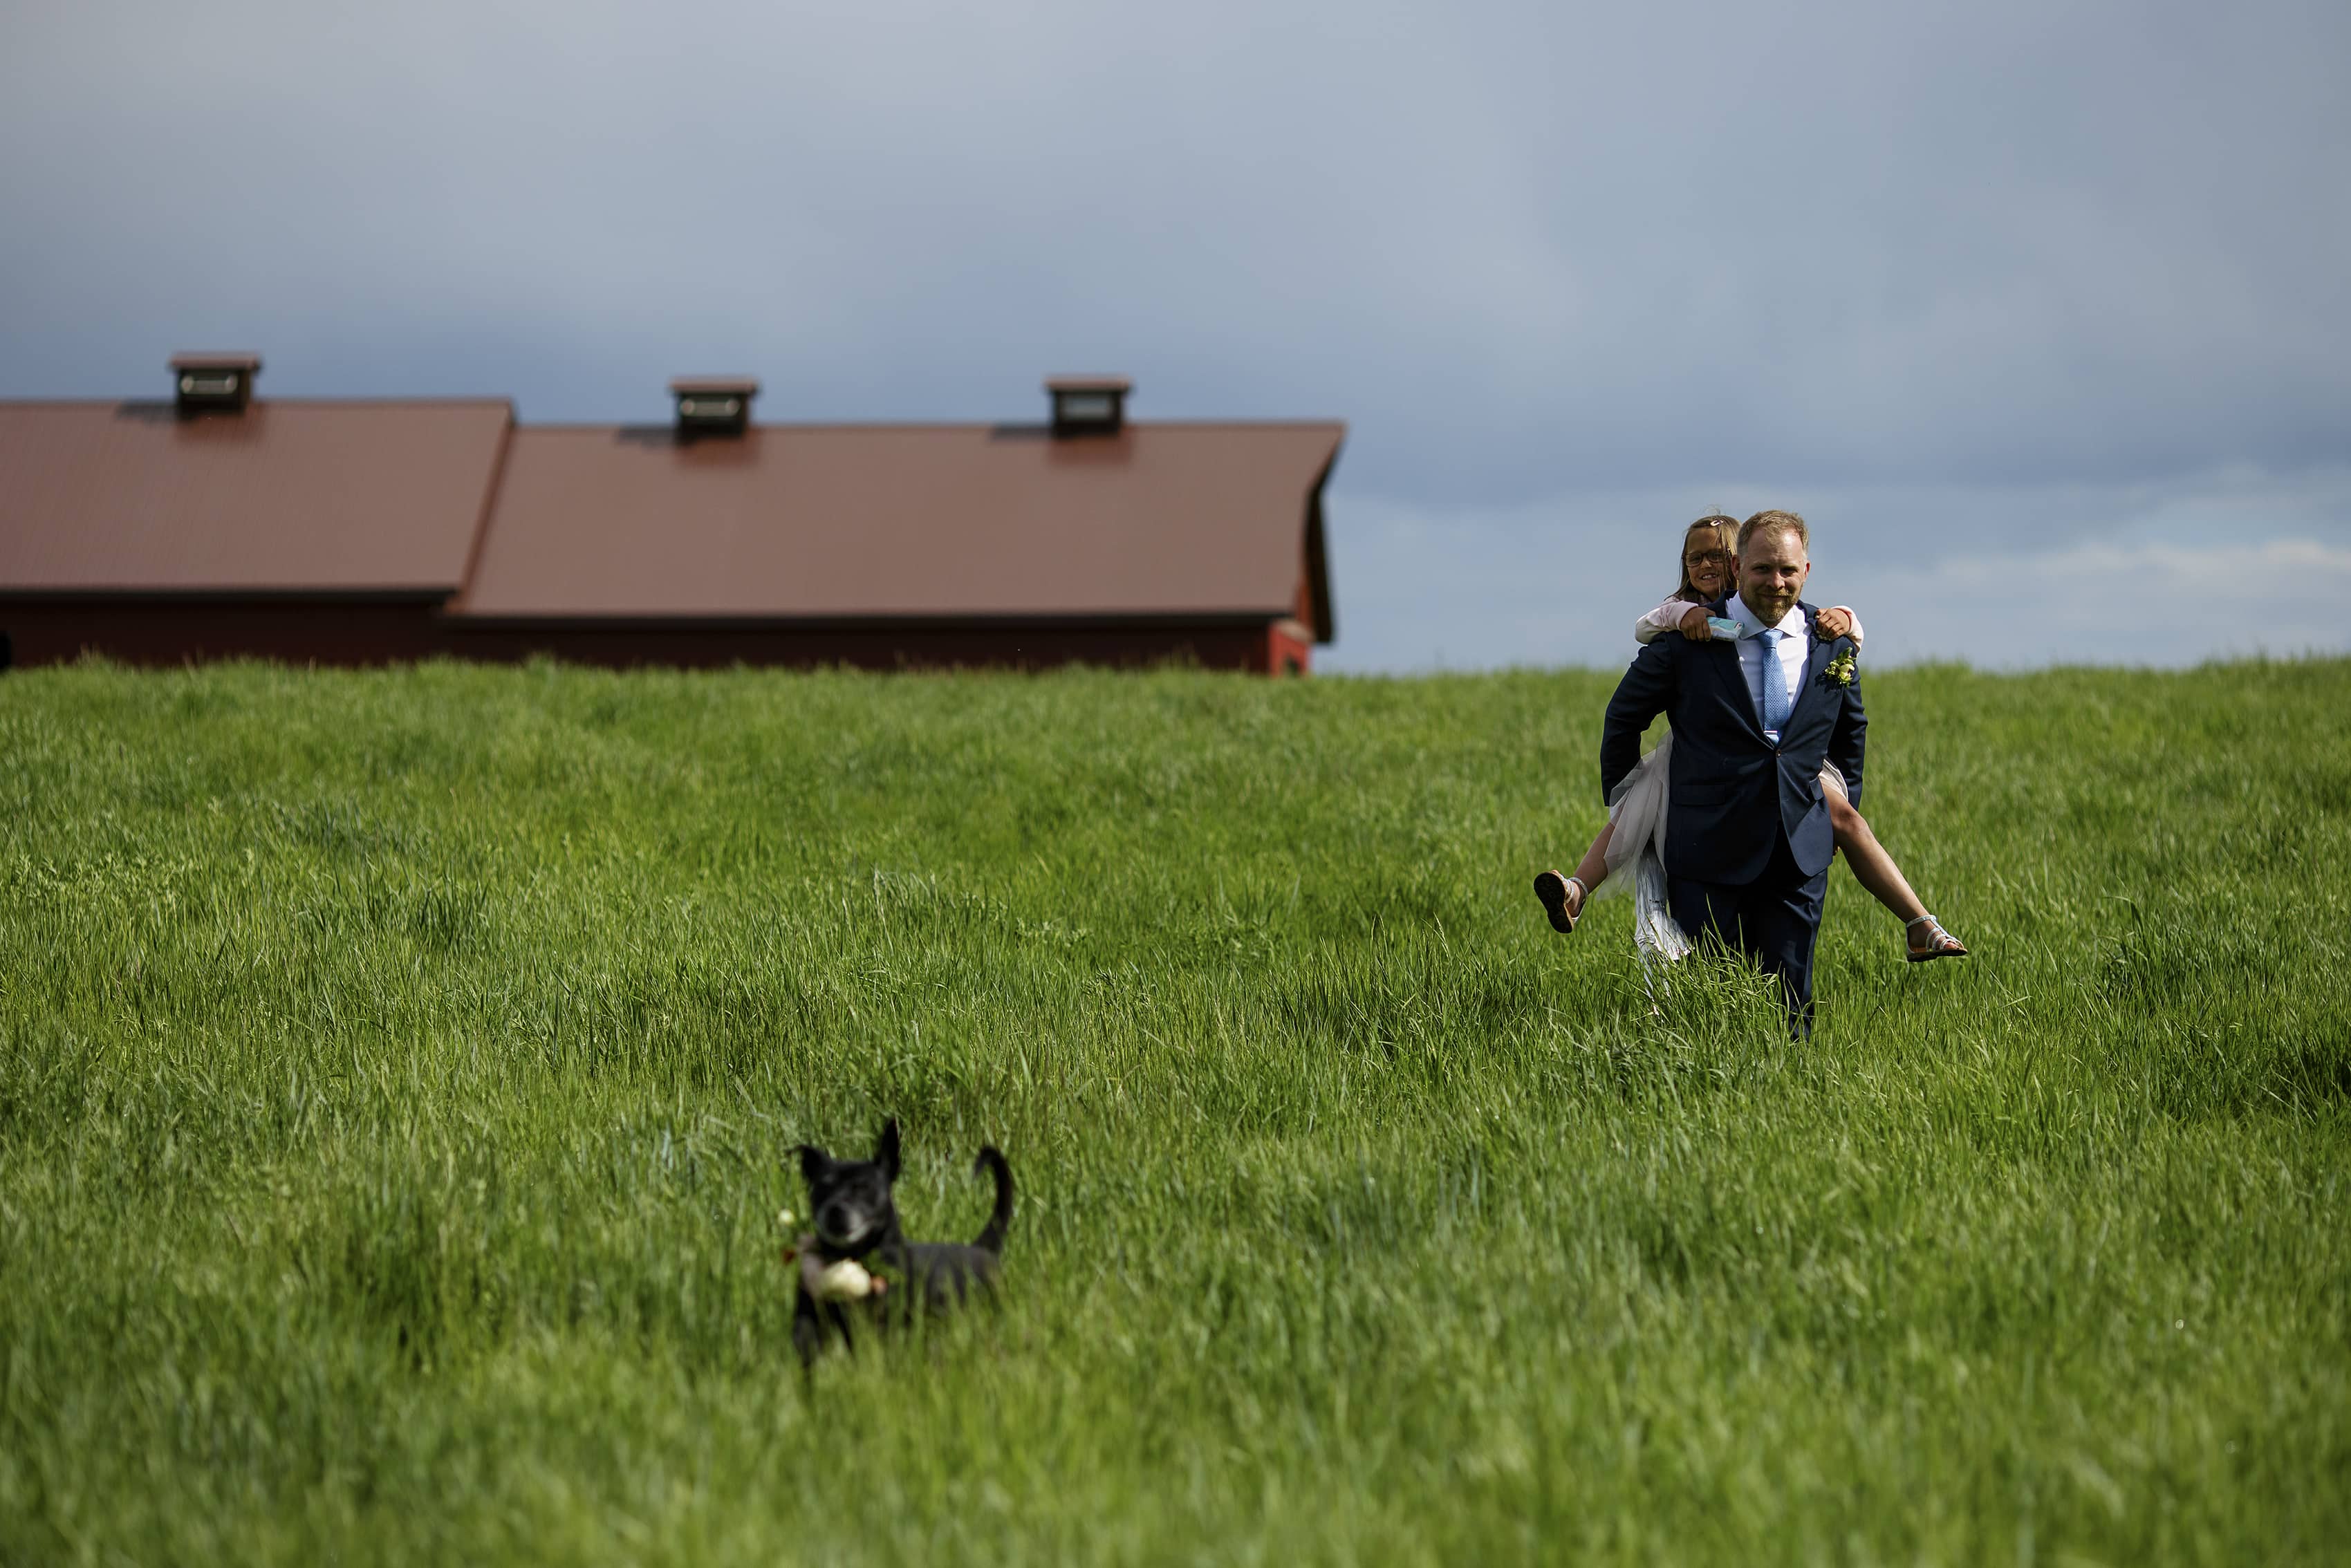 The groom carries his niece through a field as his dog runs ahead